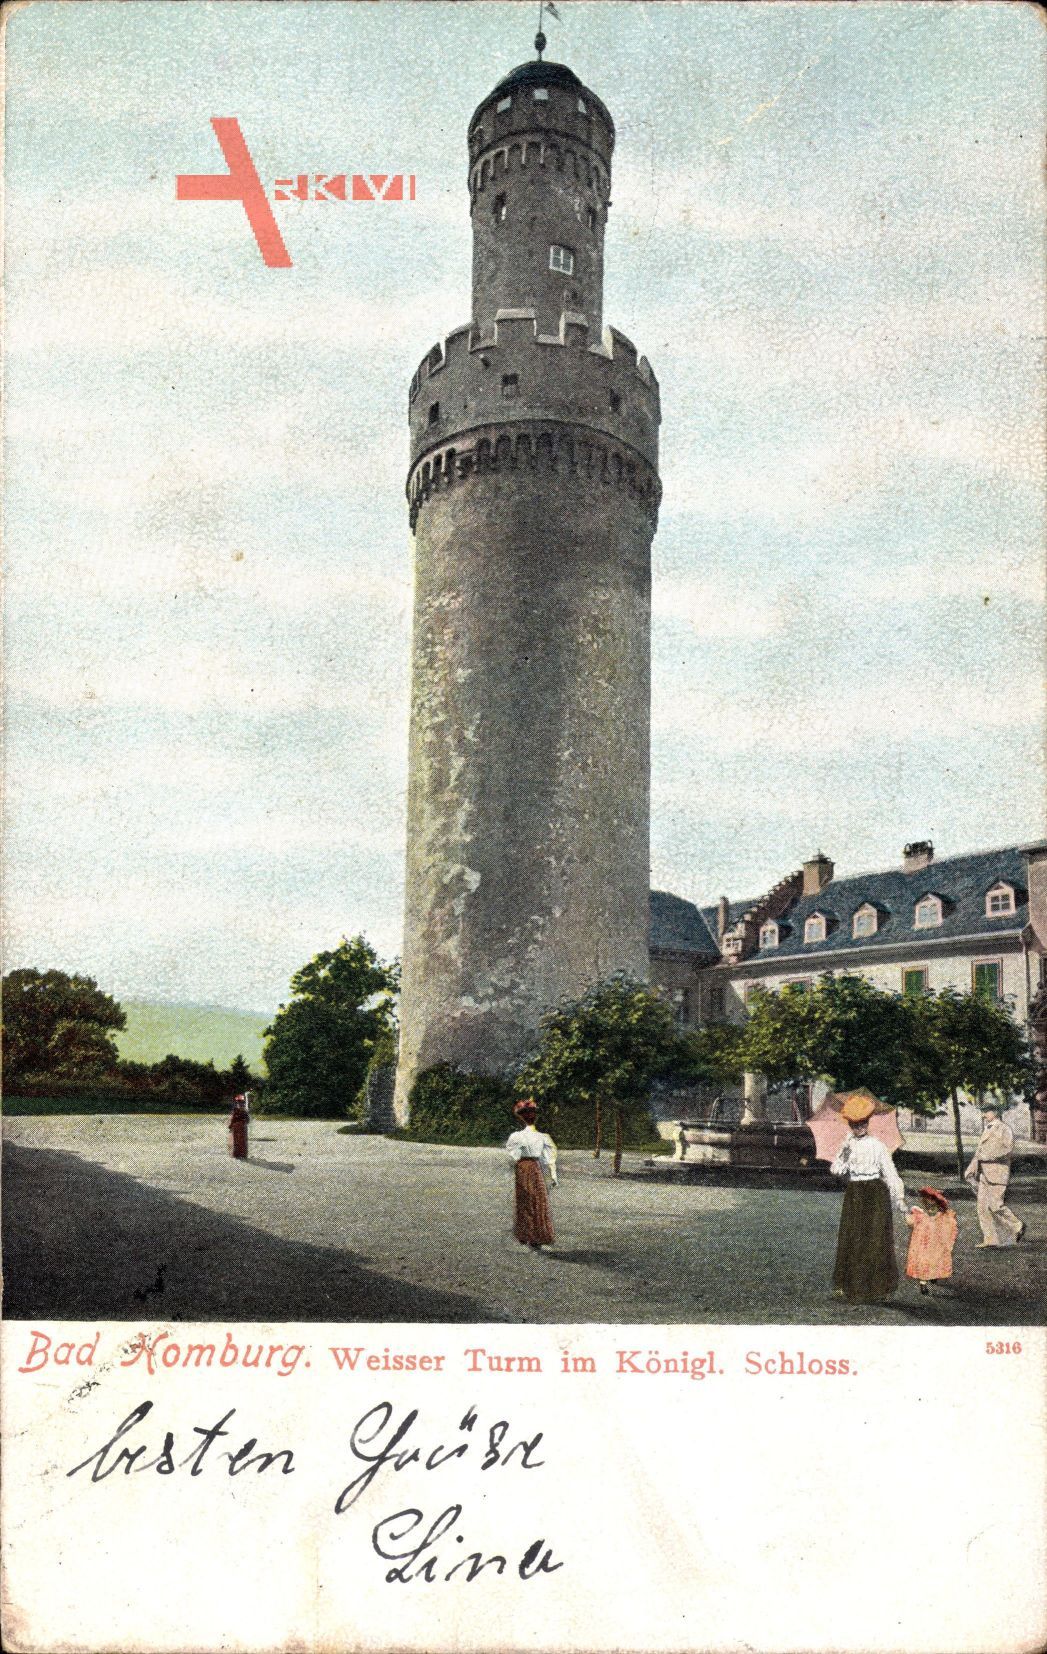 Bad Homburg v.d.H., Blick auf Weißen Turm im königlichen Schloss